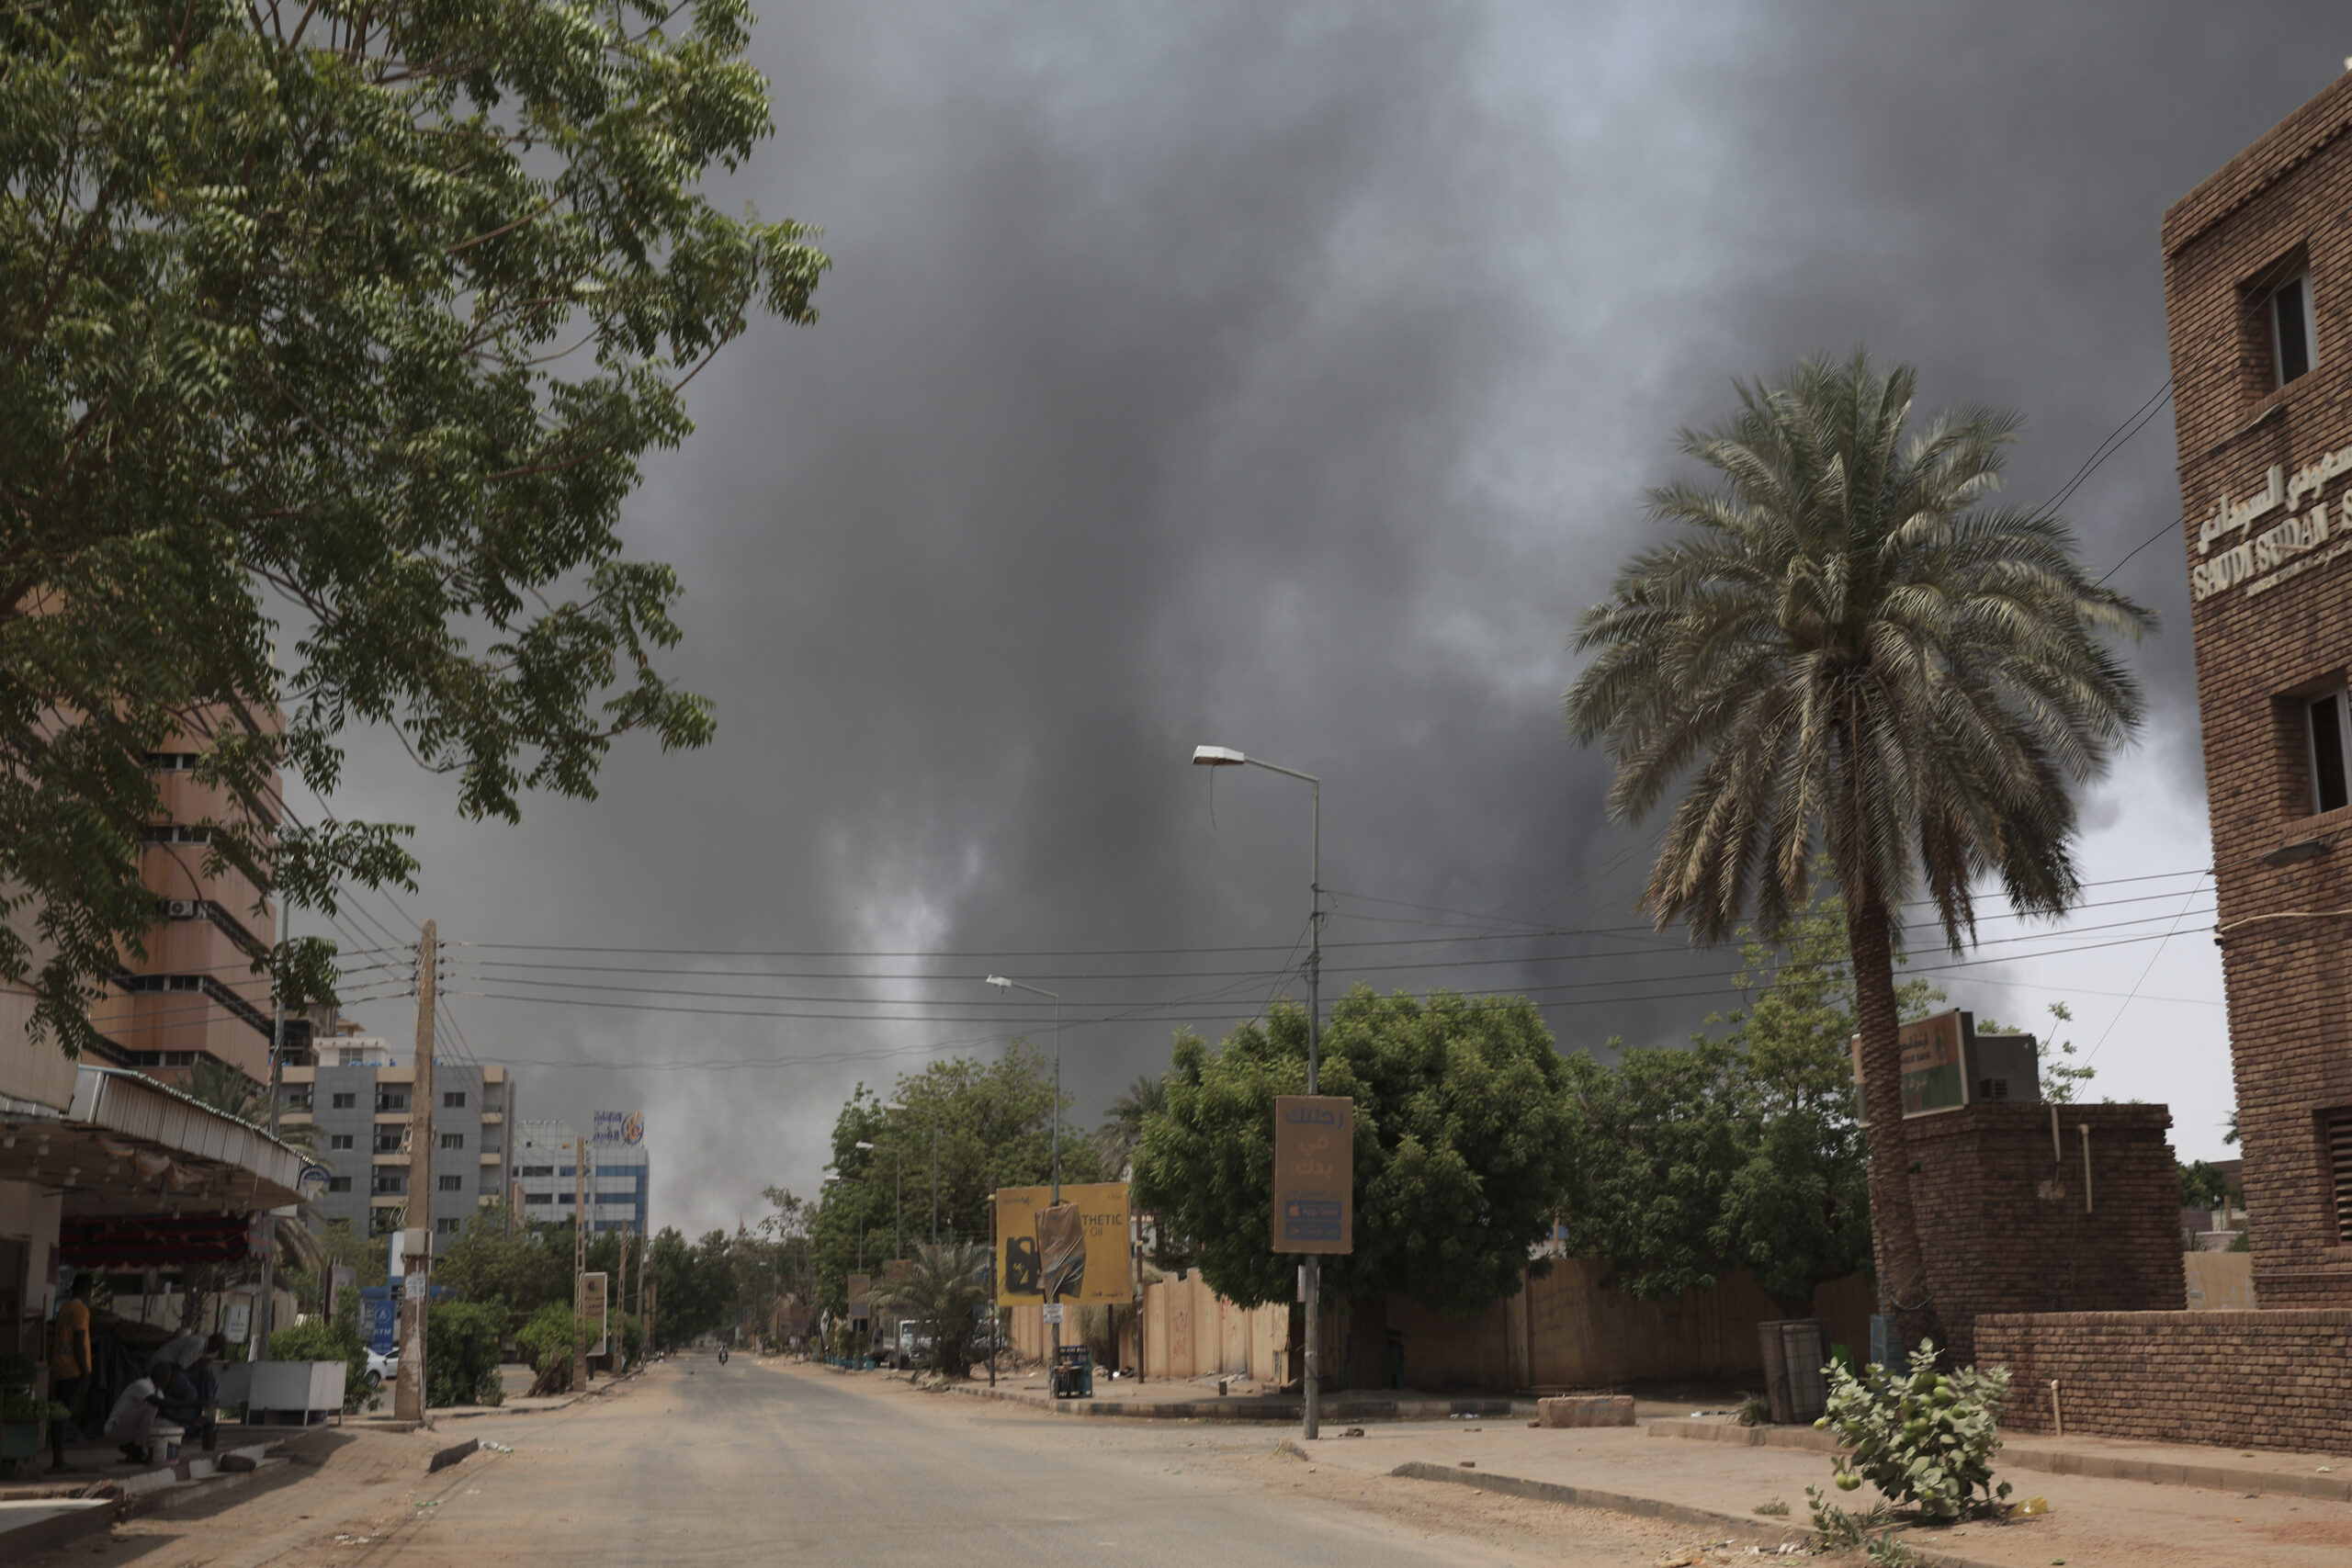 Σουδάν: Πόλεμος αντιμαχόμενων δυνάμεων για την εξουσία και τον πλούτο – Τι ανέφερε ο καθ. Διεθνών Σχέσεων Μ. Καραγιάννης